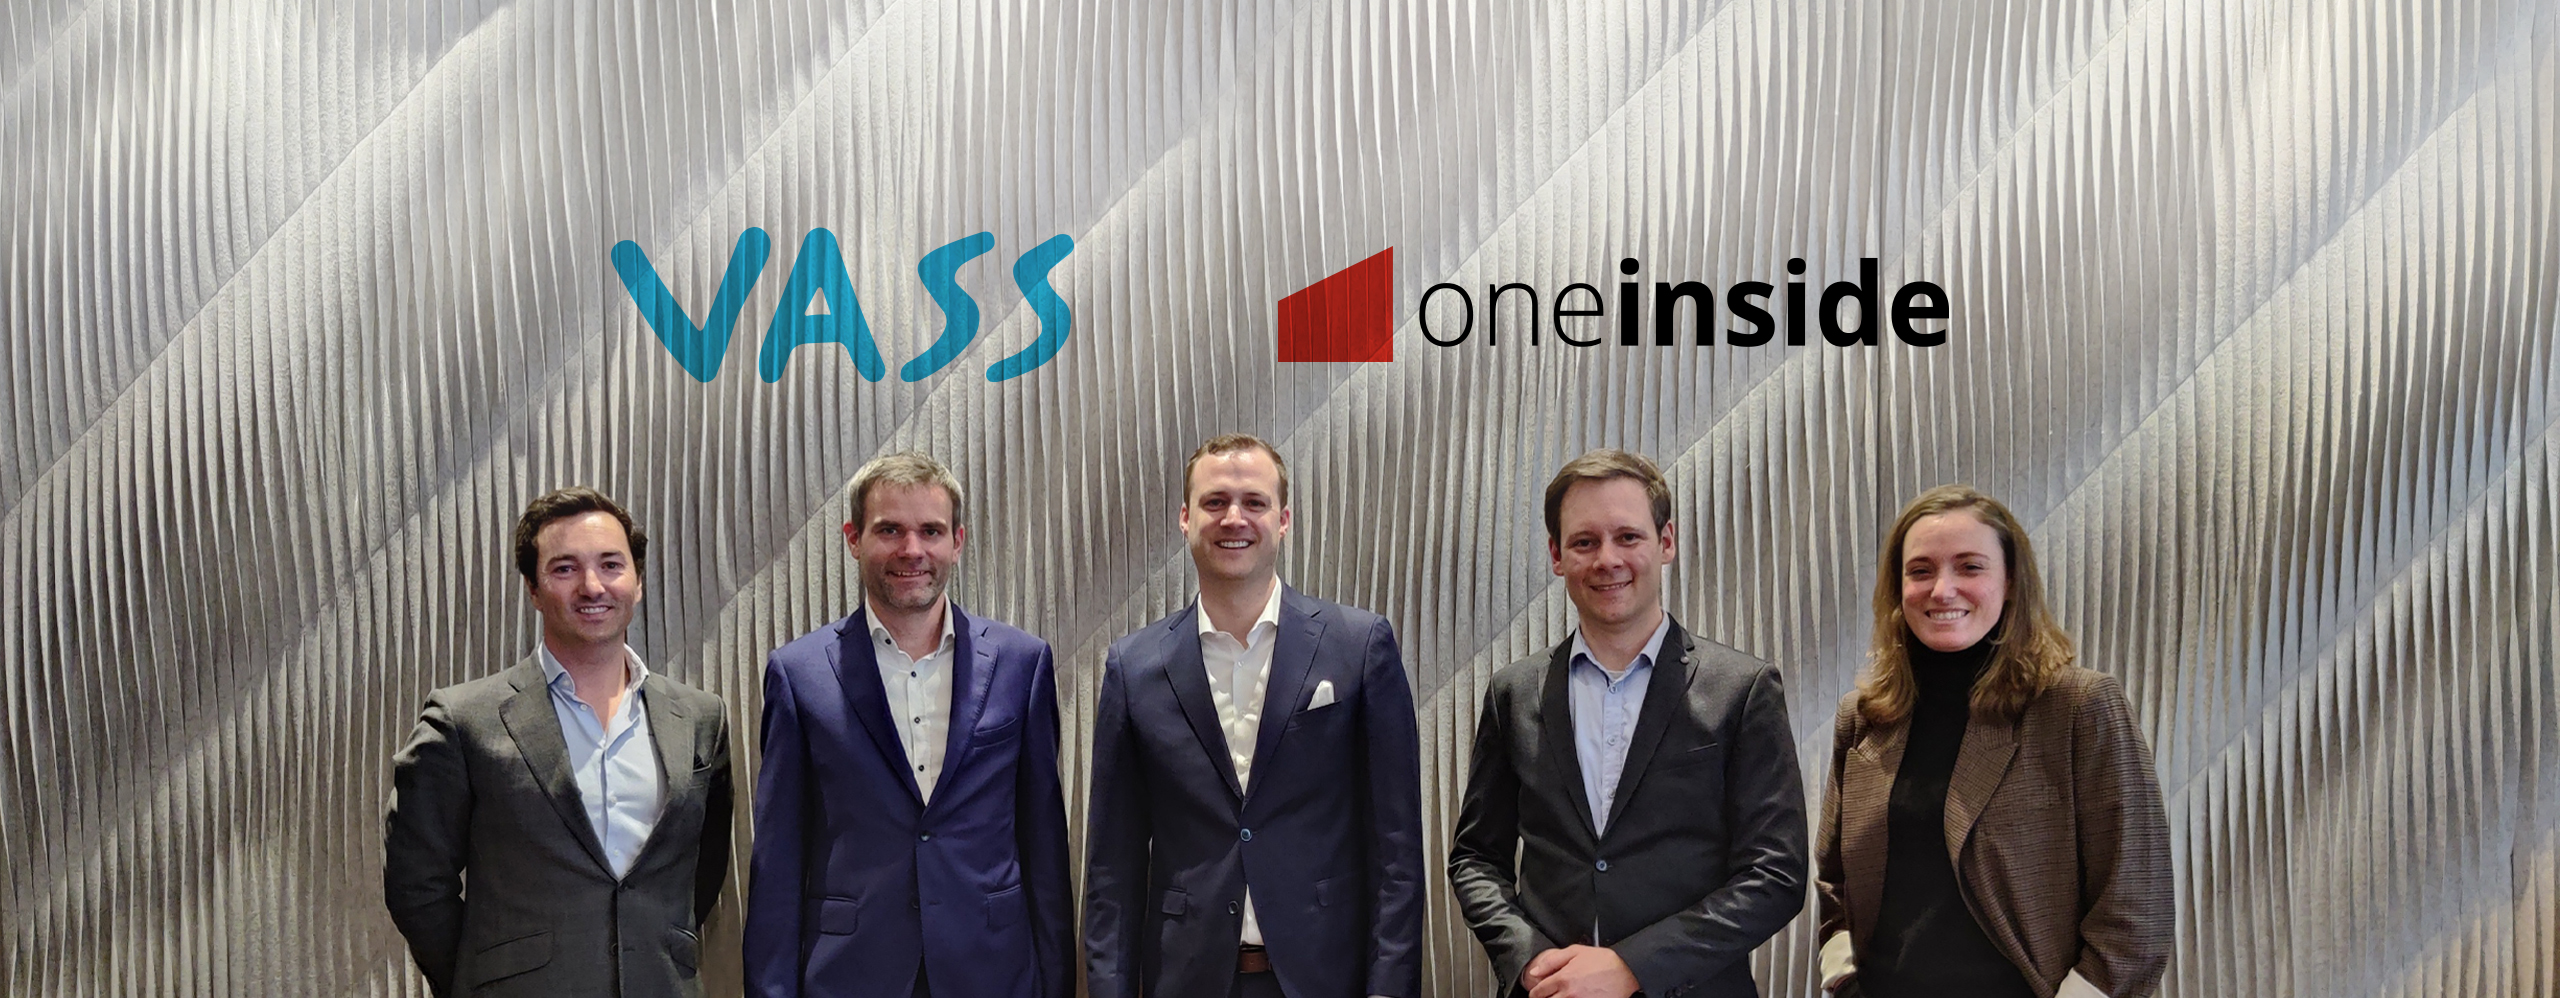 VASS firma un acuerdo para adquirir One Inside, empresa especializada en soluciones tecnológicas de Adobe con sede en Suiza